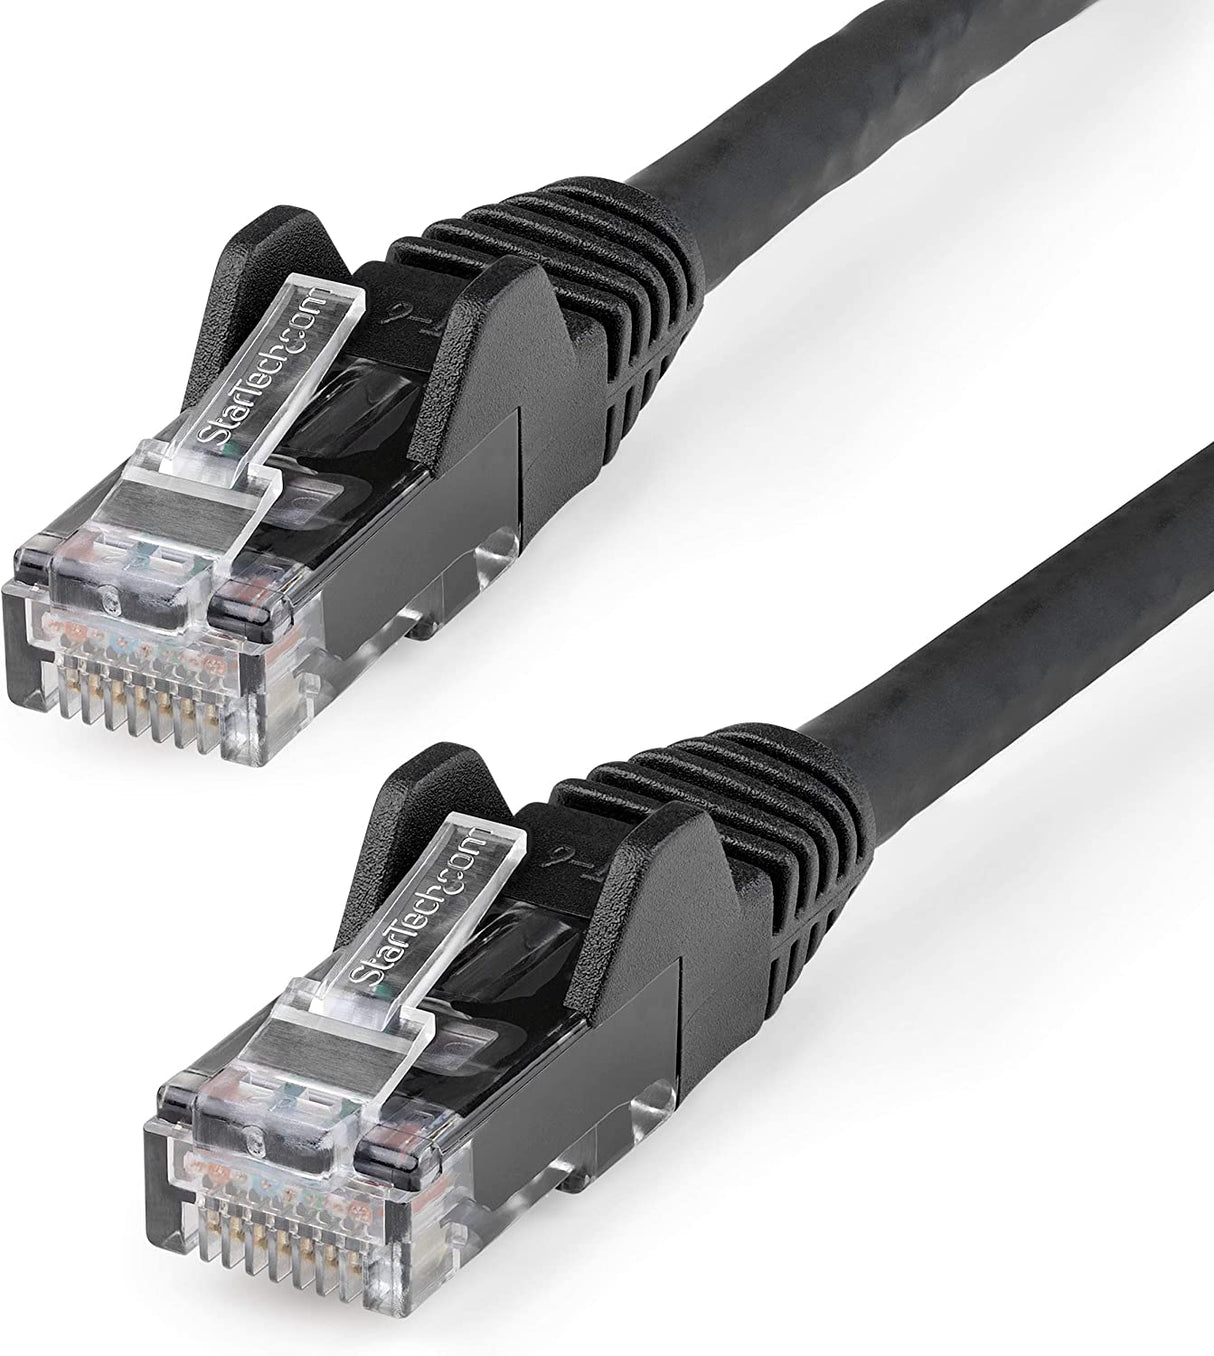 StarTech.com 35ft (10.7m) CAT6 Ethernet Cable - LSZH (Low Smoke Zero Halogen) - 10 Gigabit 650MHz 100W PoE RJ45 UTP Network Patch Cord Snagless w/Strain Relief, Black CAT 6 ETL Verified (N6LPATCH35BK) 35 ft Black